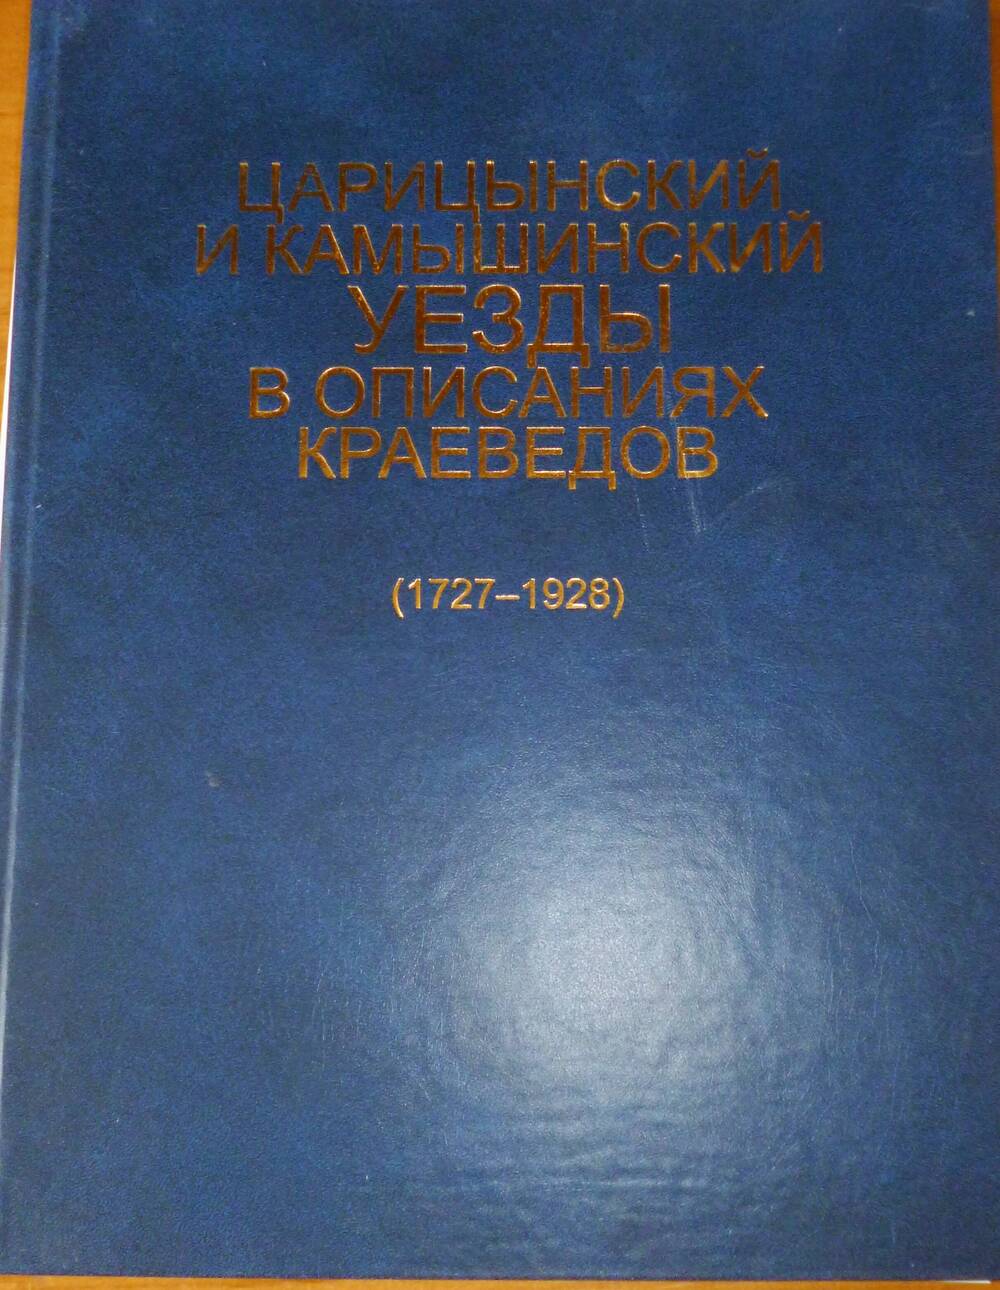 Книга Царицынский и Камышинский уезды в описаниях краеведов